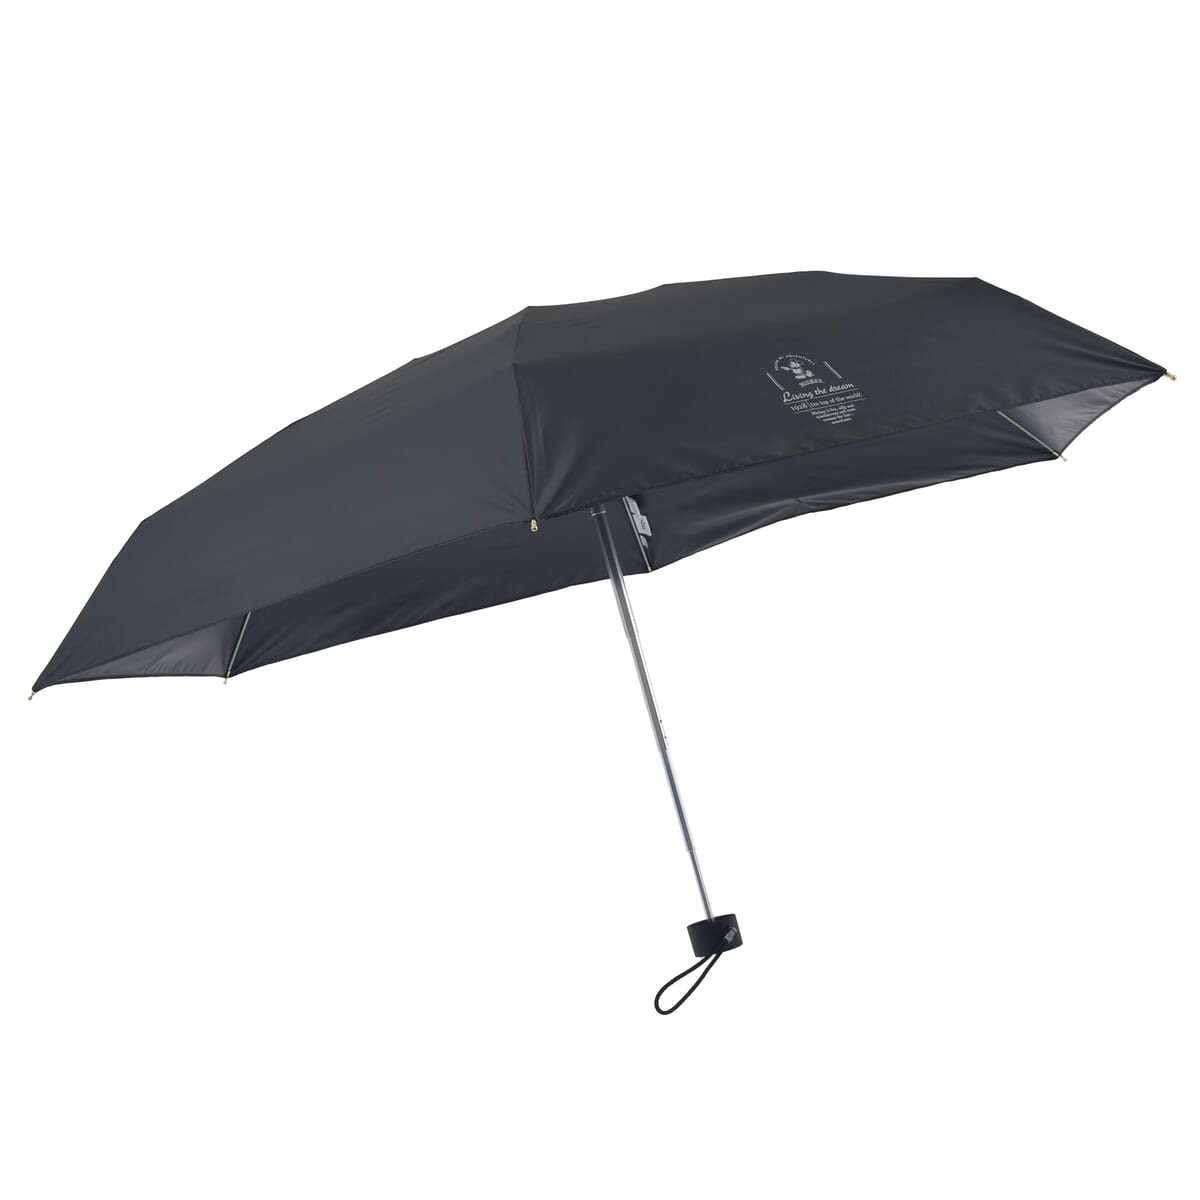 【Wpc.】ミッキー 日傘 折りたたみ式 晴雨兼用 ユニセックス